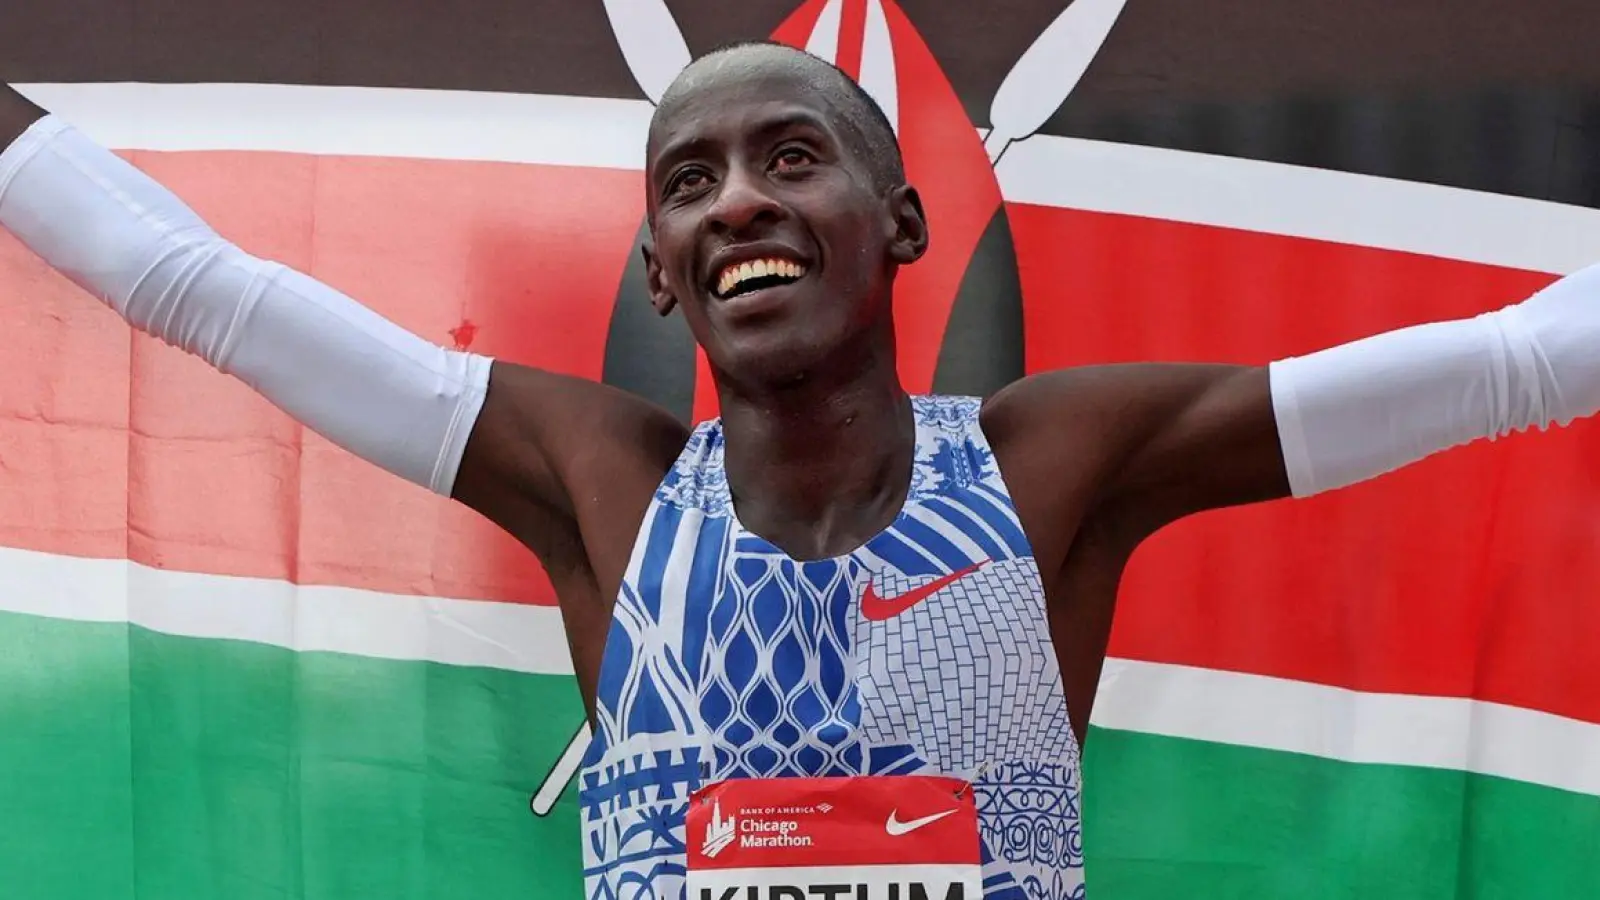 Der Kenianer Kelvin Kiptum war in Chicago einen Marathon-Weltrekord gelaufen. (Foto: Eileen T. Meslar/Chicago Tribune/AP/dpa)